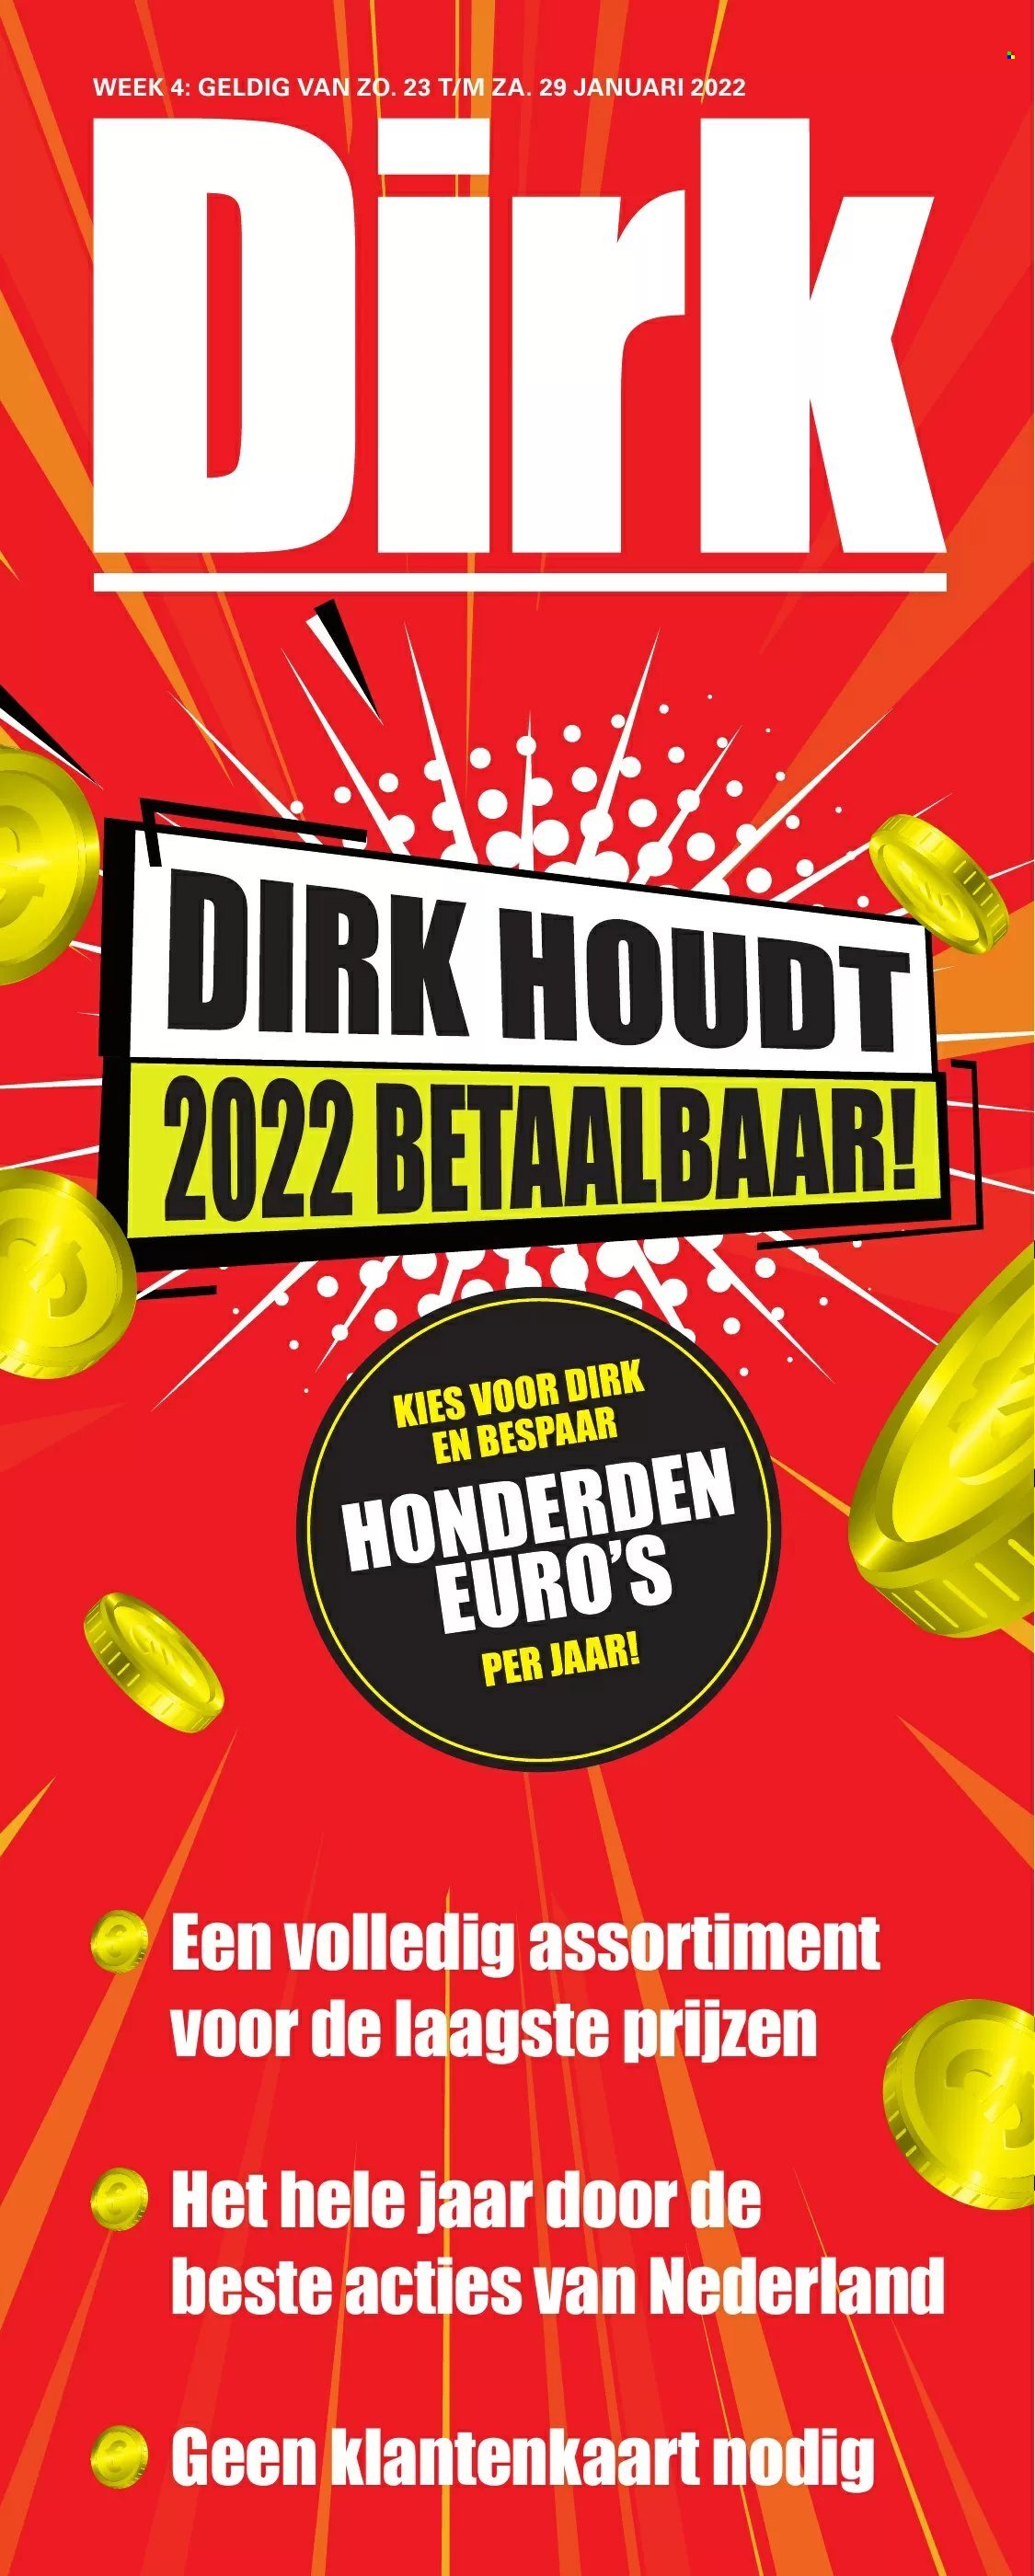 Dirk-aanbieding - 23.1.2022 - 29.1.2022.